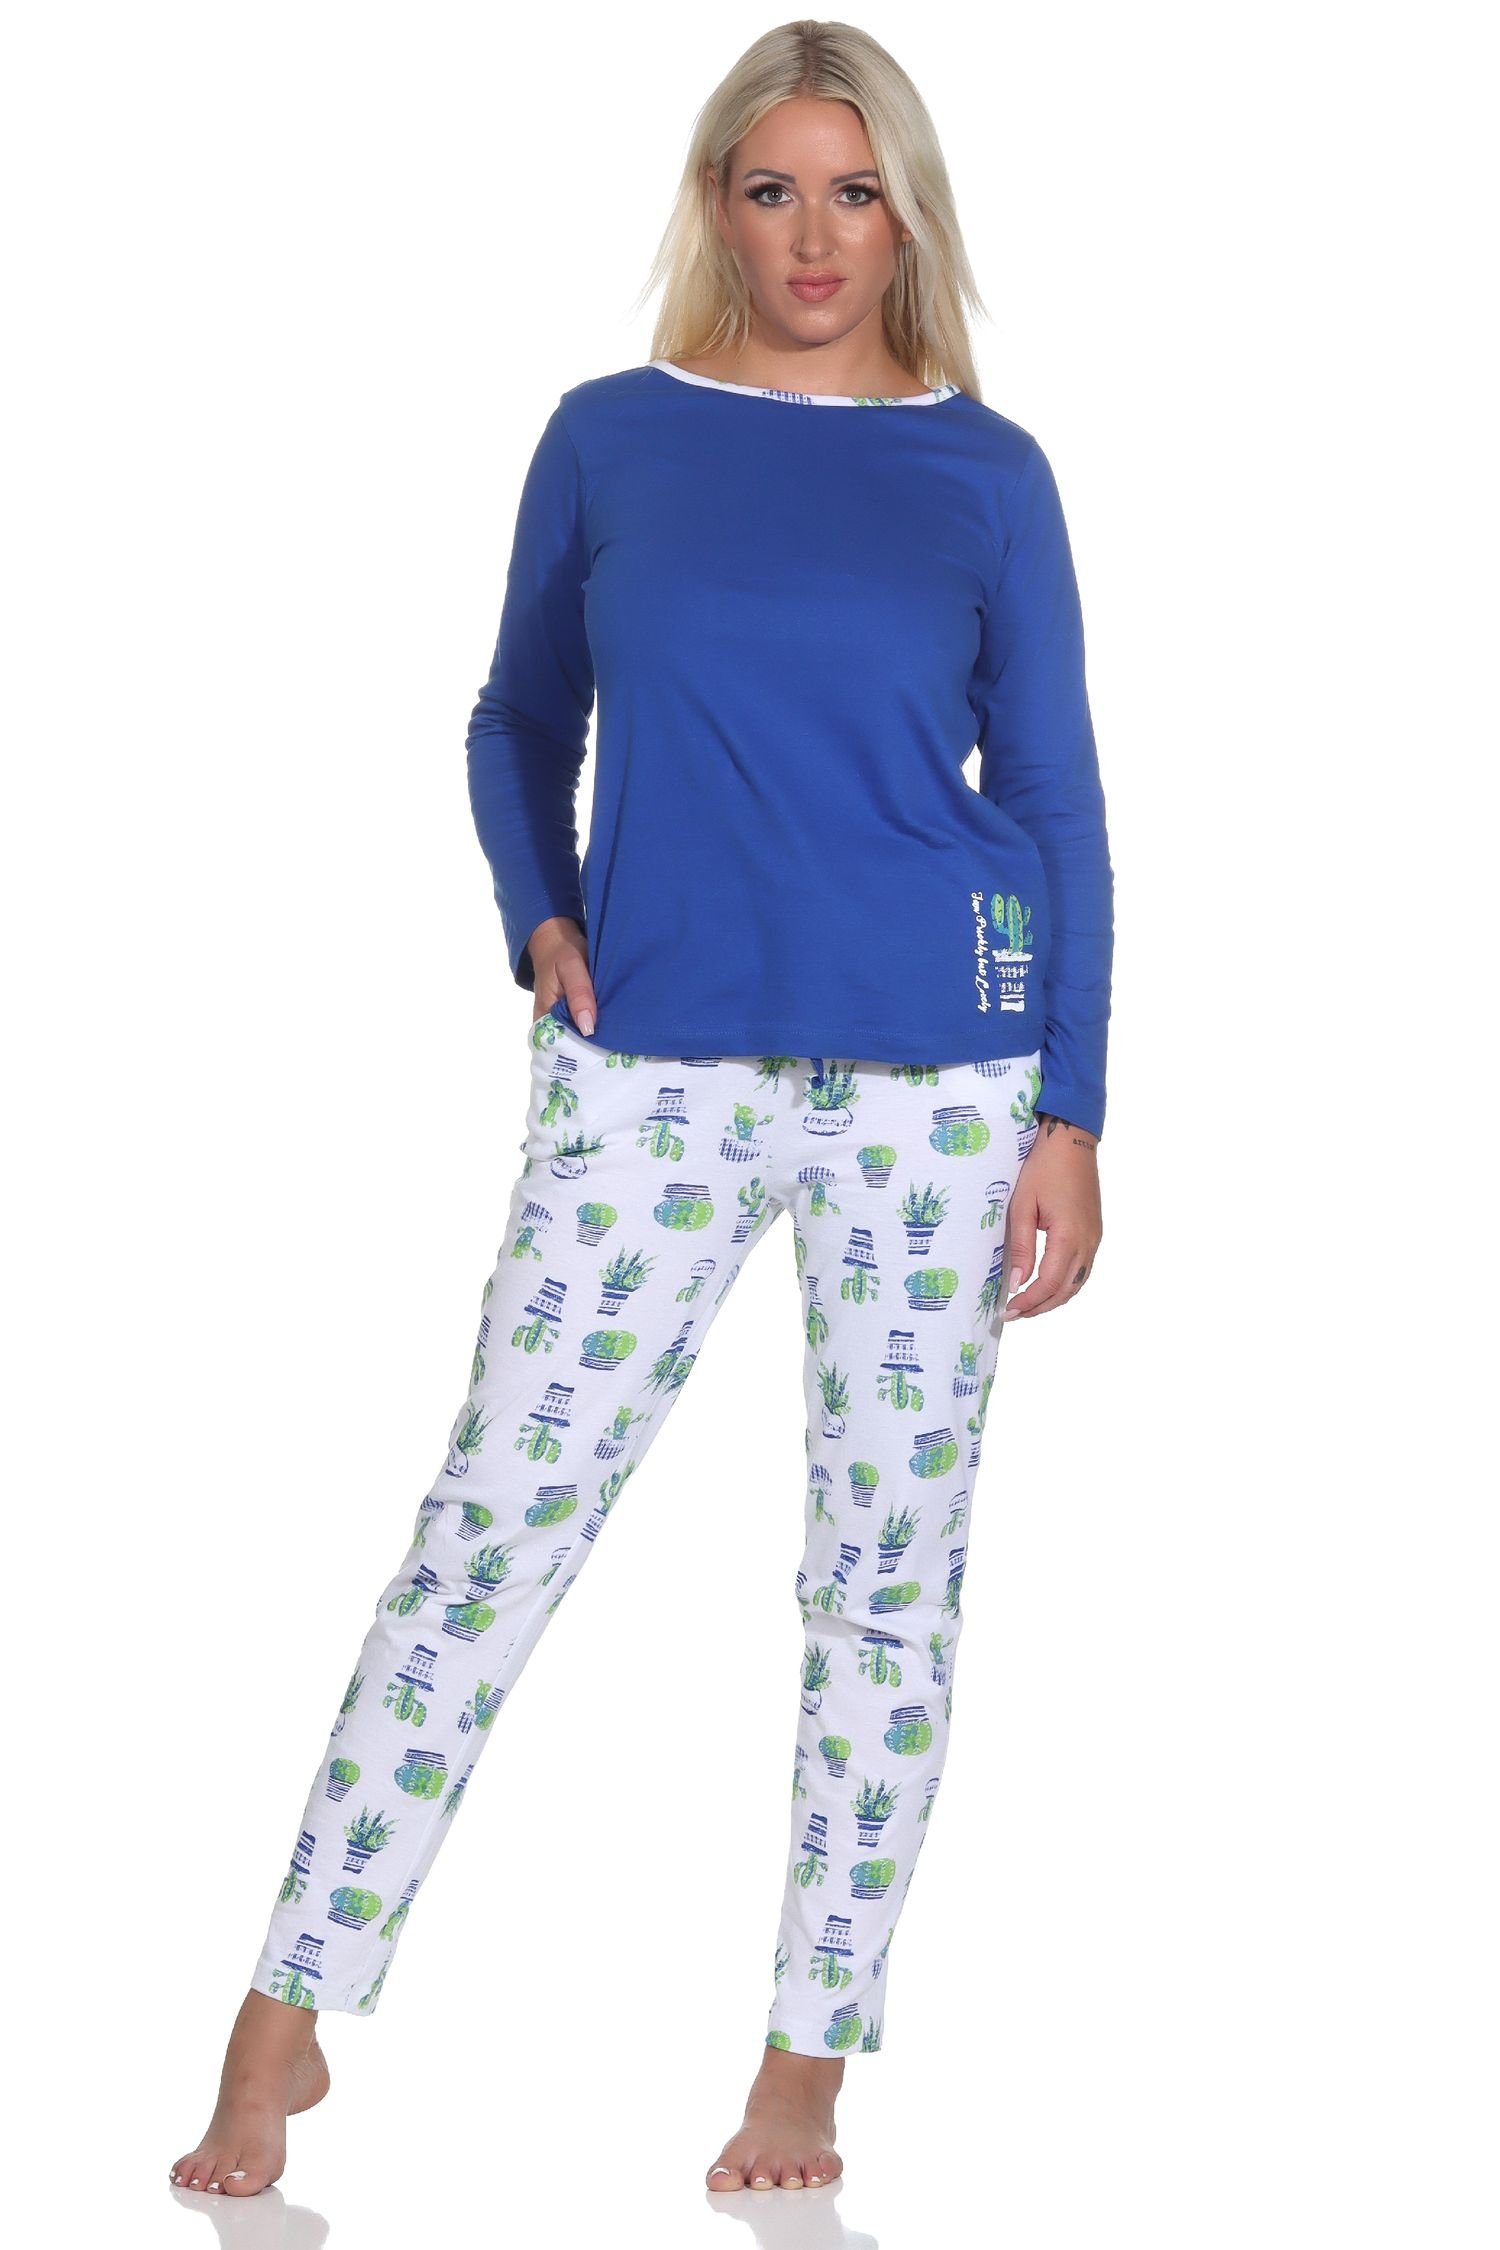 Normann Pyjama Damen Schlafanzug Lang, Oberteil mit Kaktus als Motiv, Hose bedruckt blau